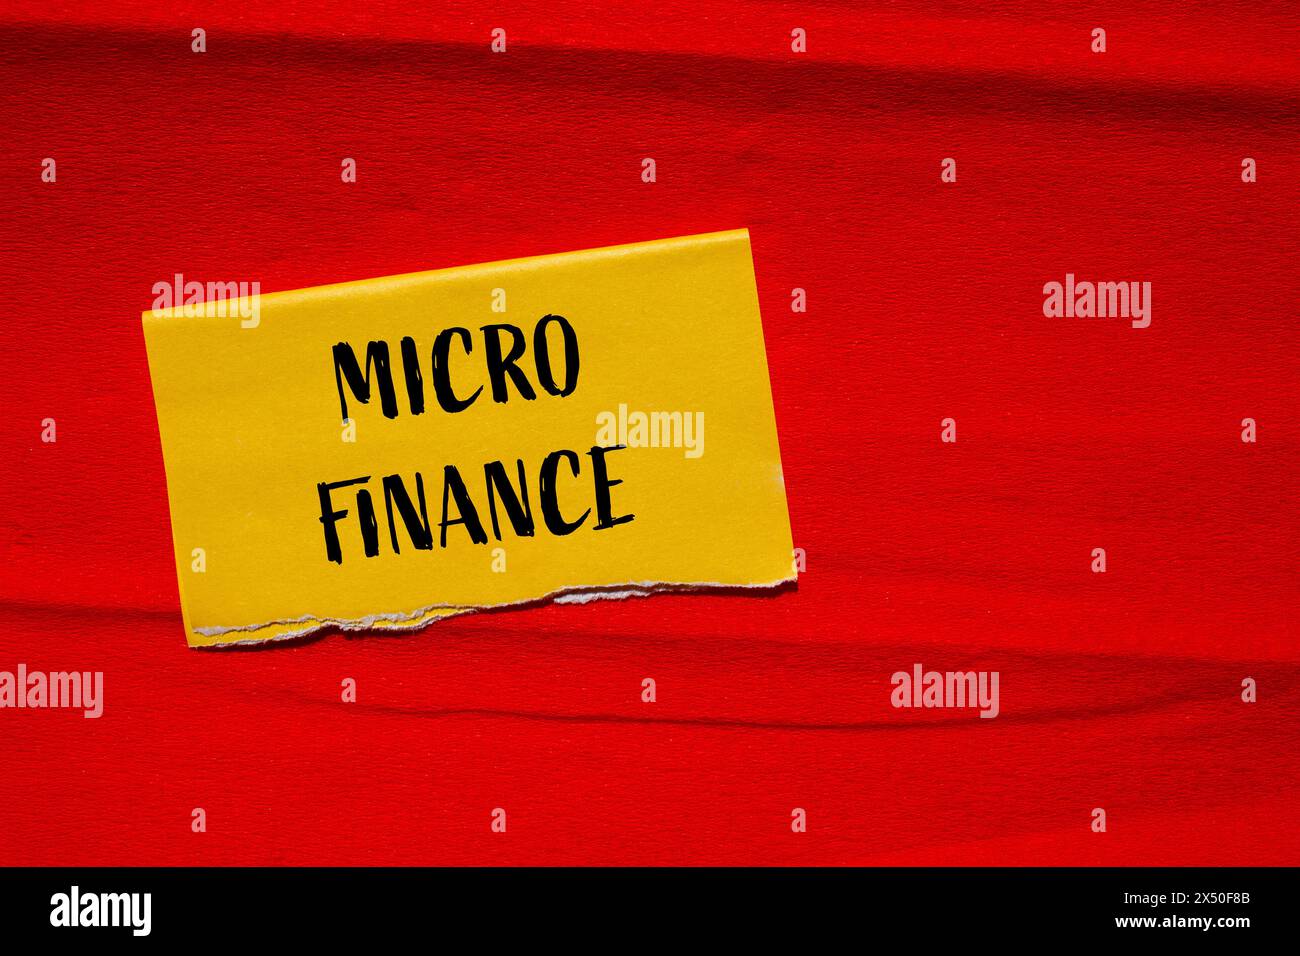 Wörter aus dem Mikrofinanzbereich auf gelbem Papier mit rotem Hintergrund. Konzeptionelles Geschäftssymbol für Mikrofinanzen. Kopierbereich. Stockfoto